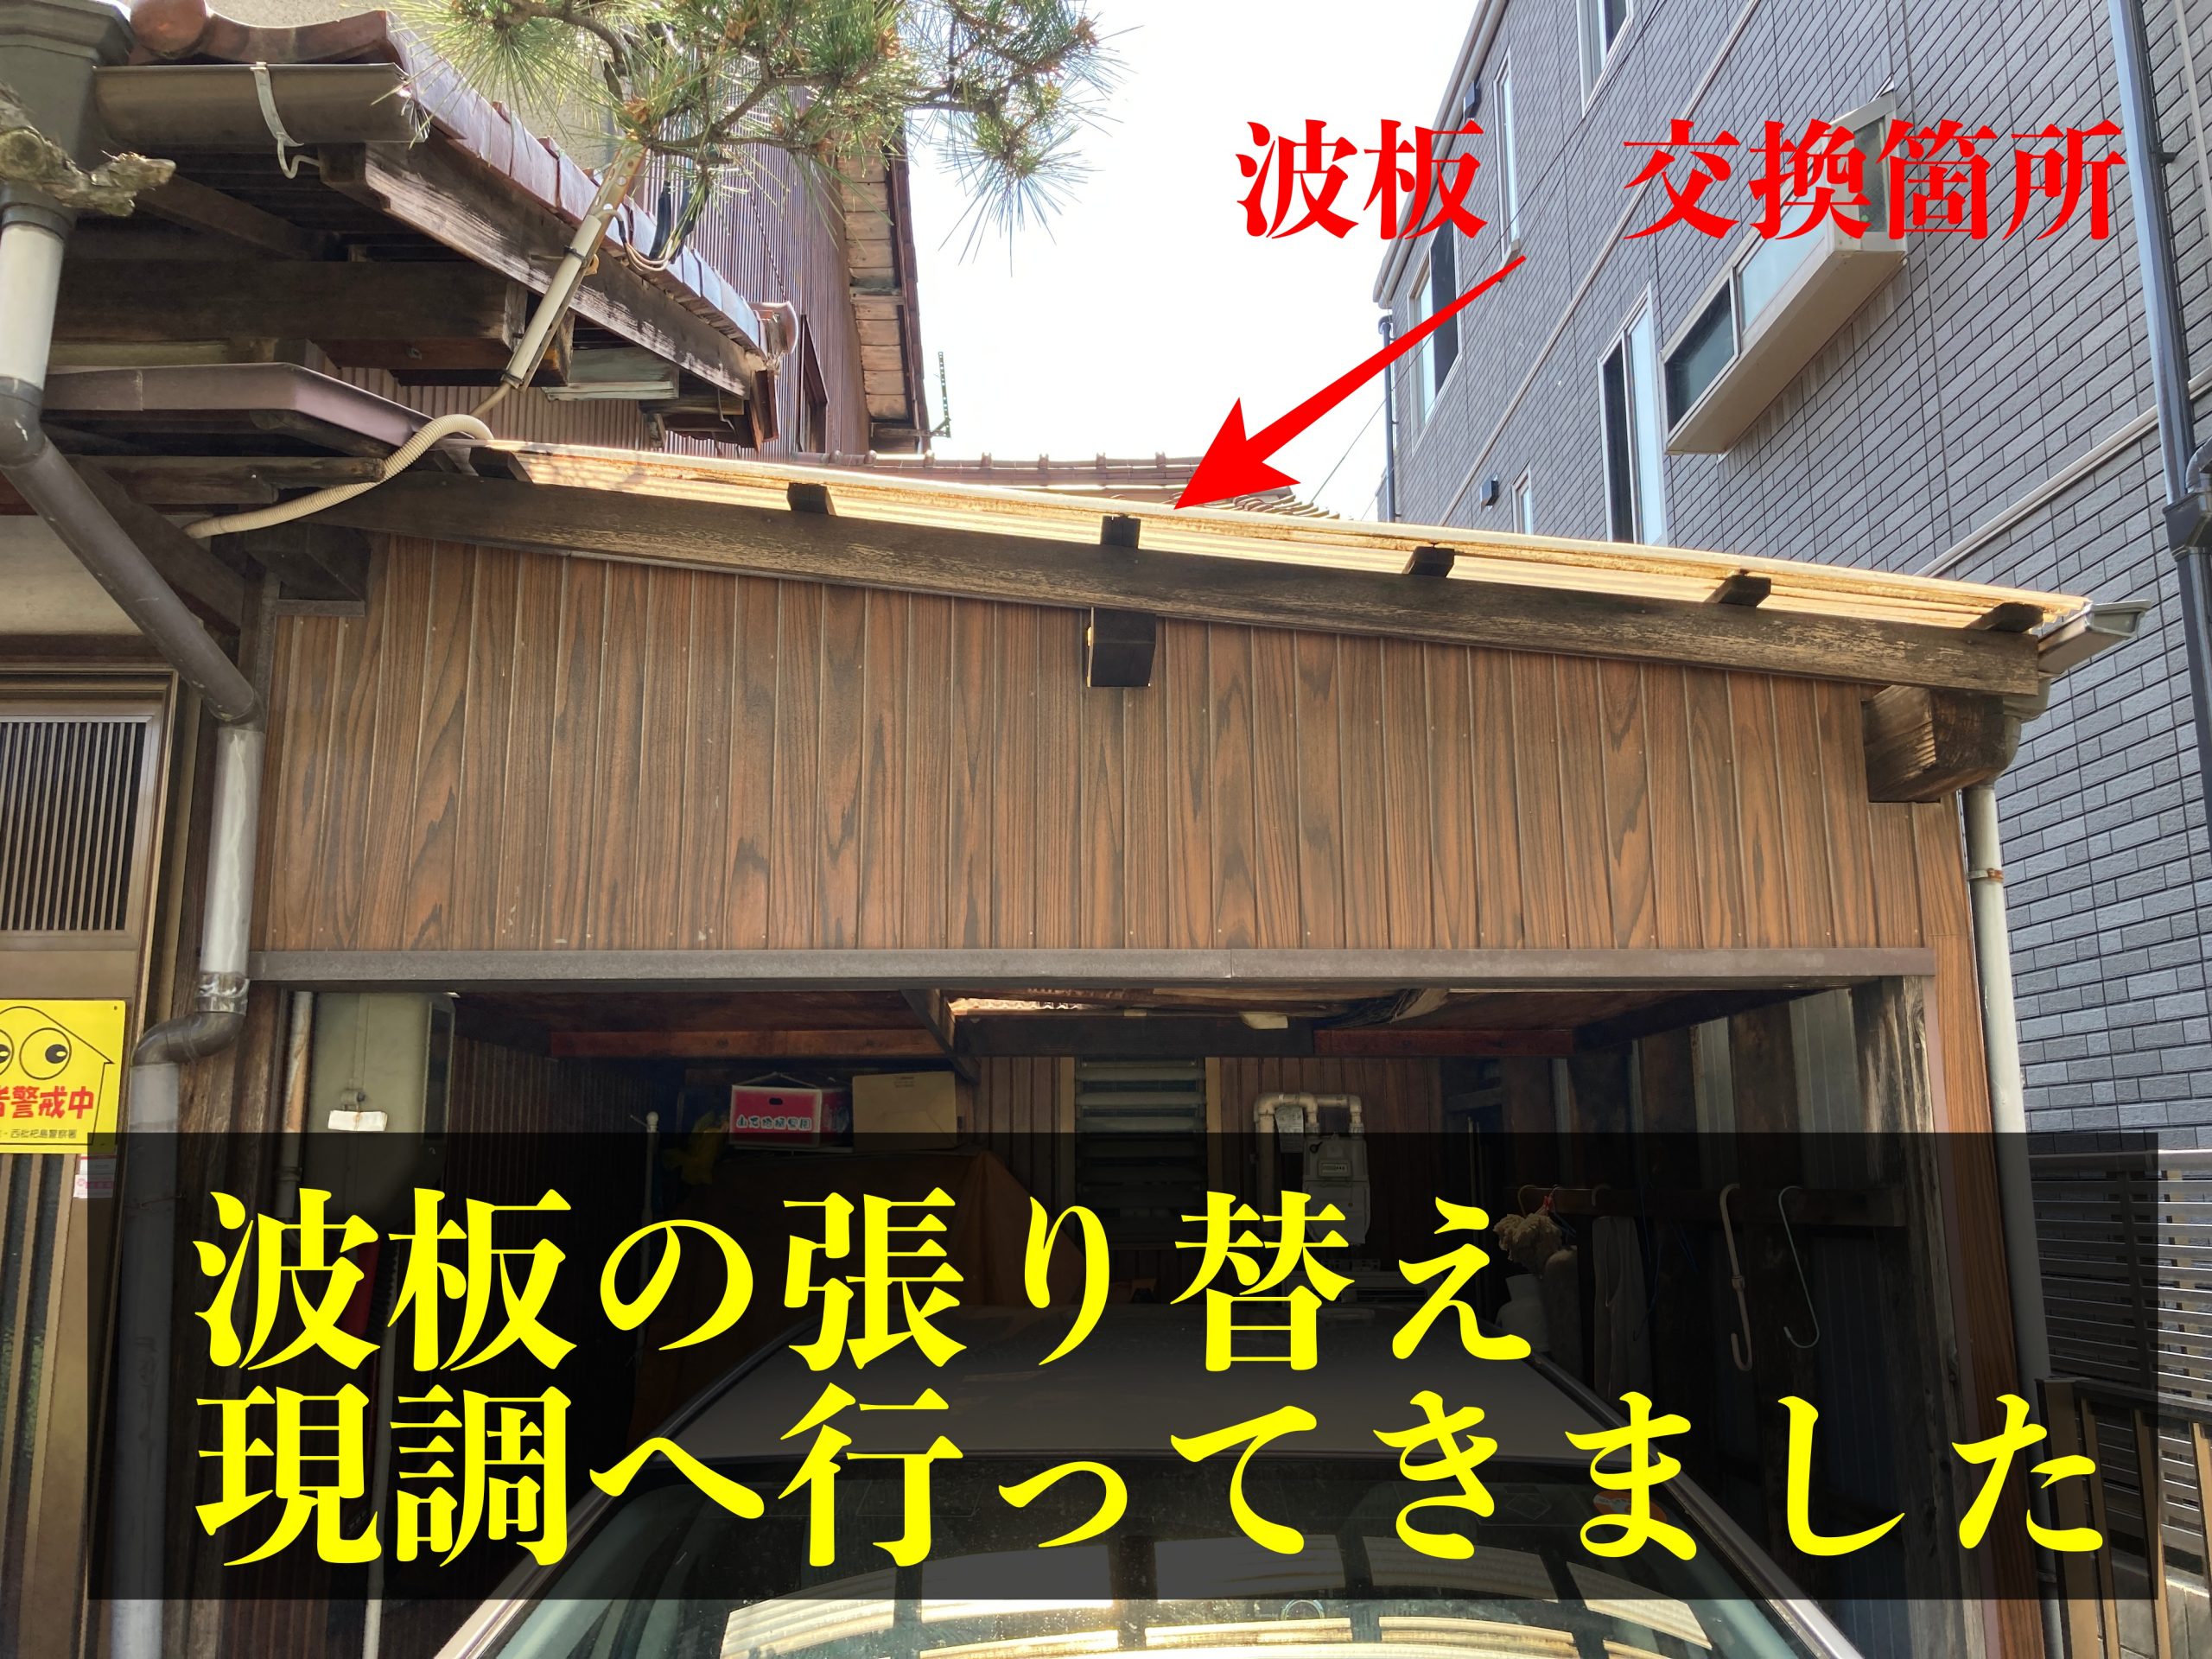 清須市で古く劣化して雨漏りのする波板張り替え調査にいってきました